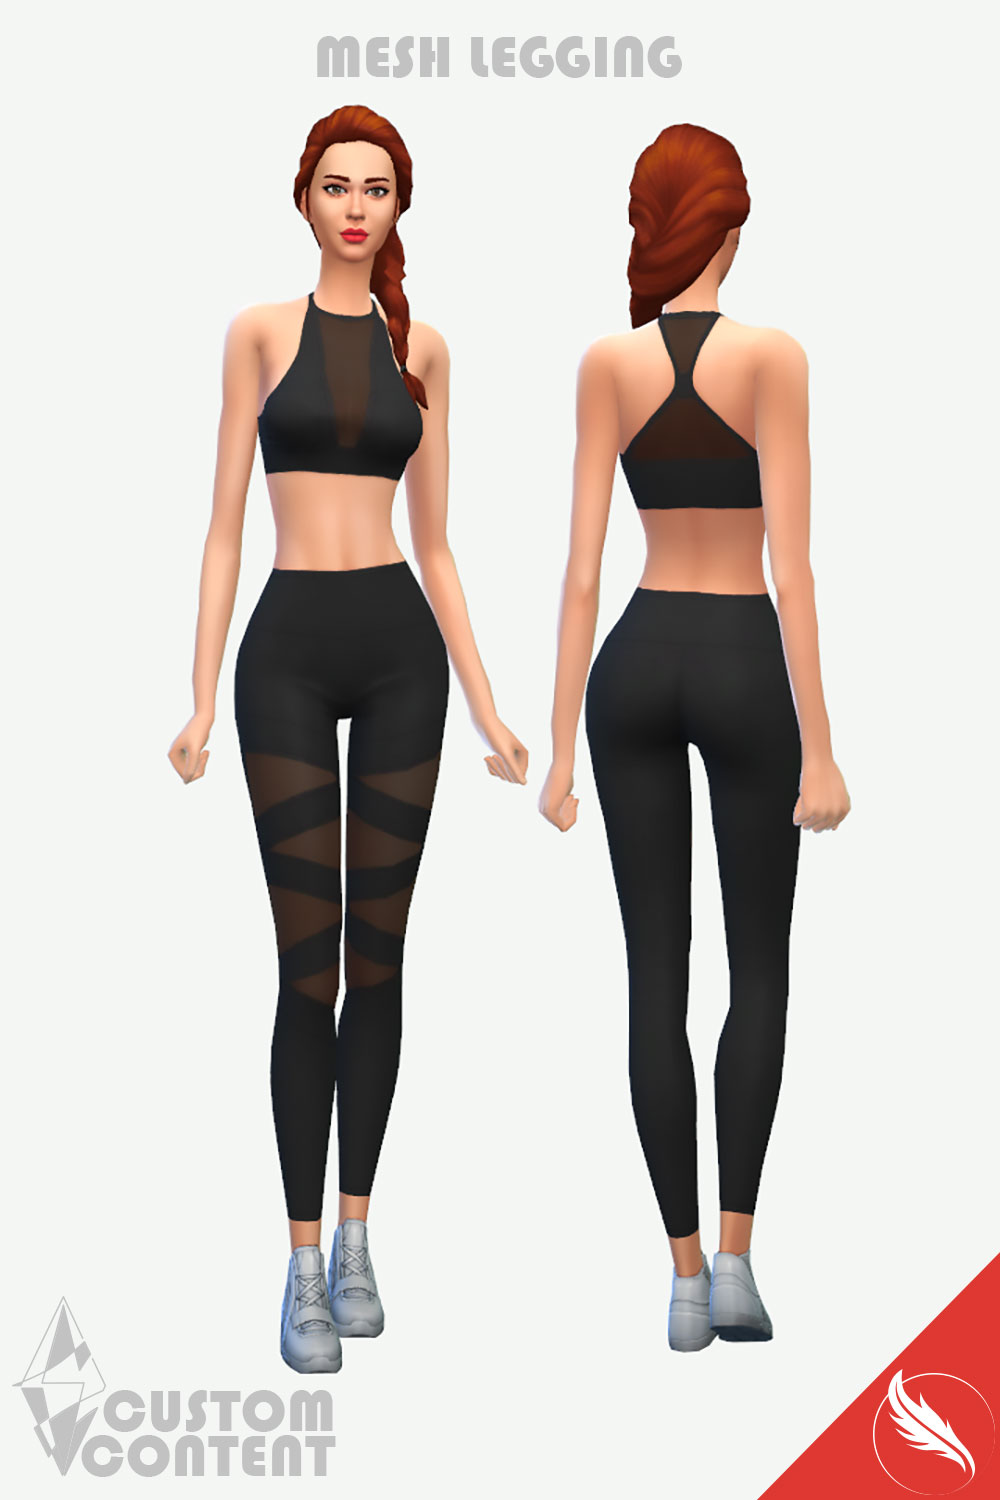 The Sims 4 Legging